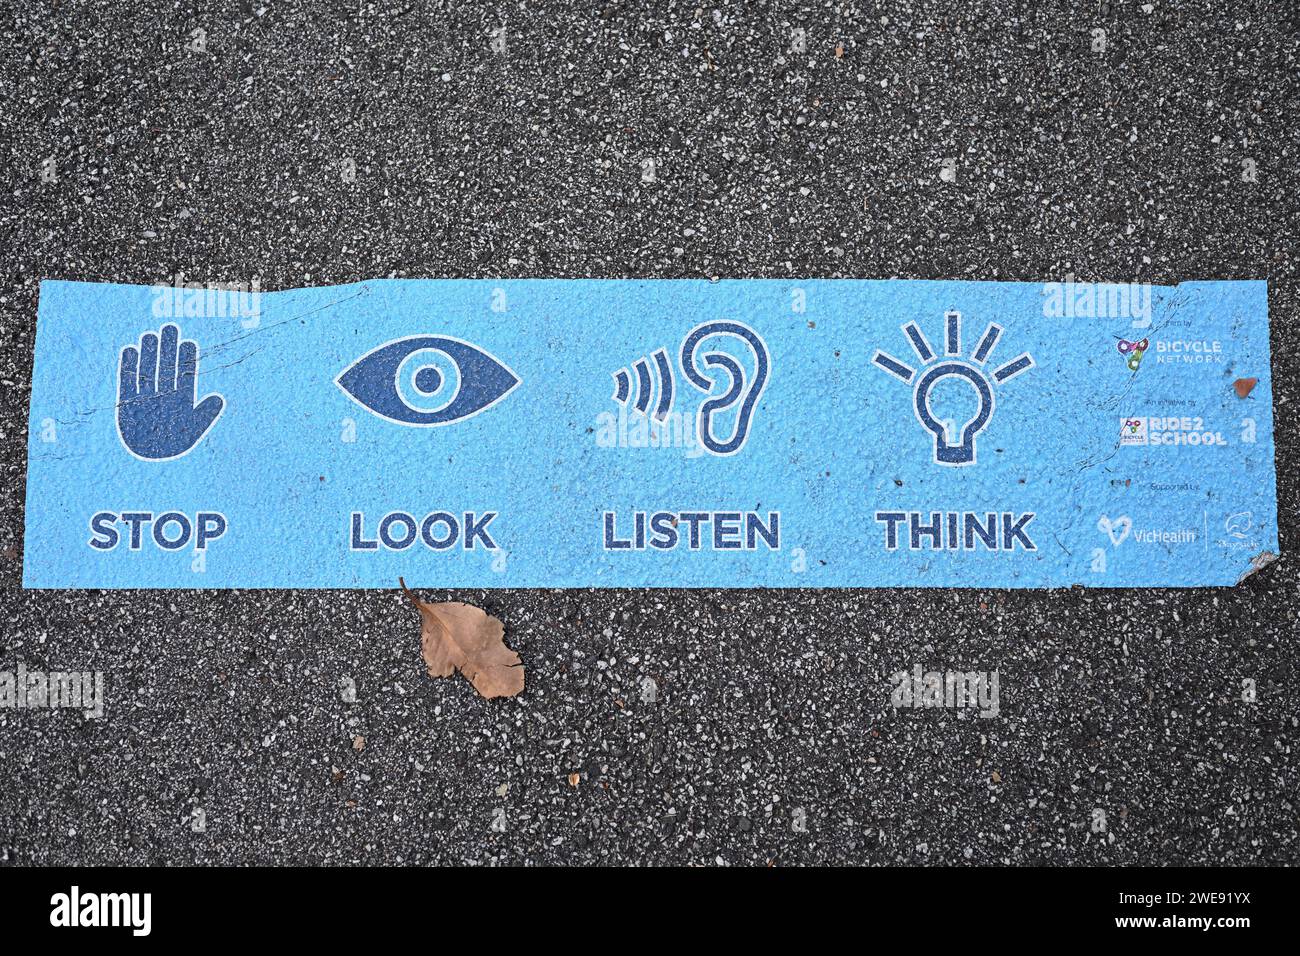 Stop look écouter Think message, qui fait partie d’une campagne de sécurité routière ciblant les élèves qui se rendent à l’école Banque D'Images